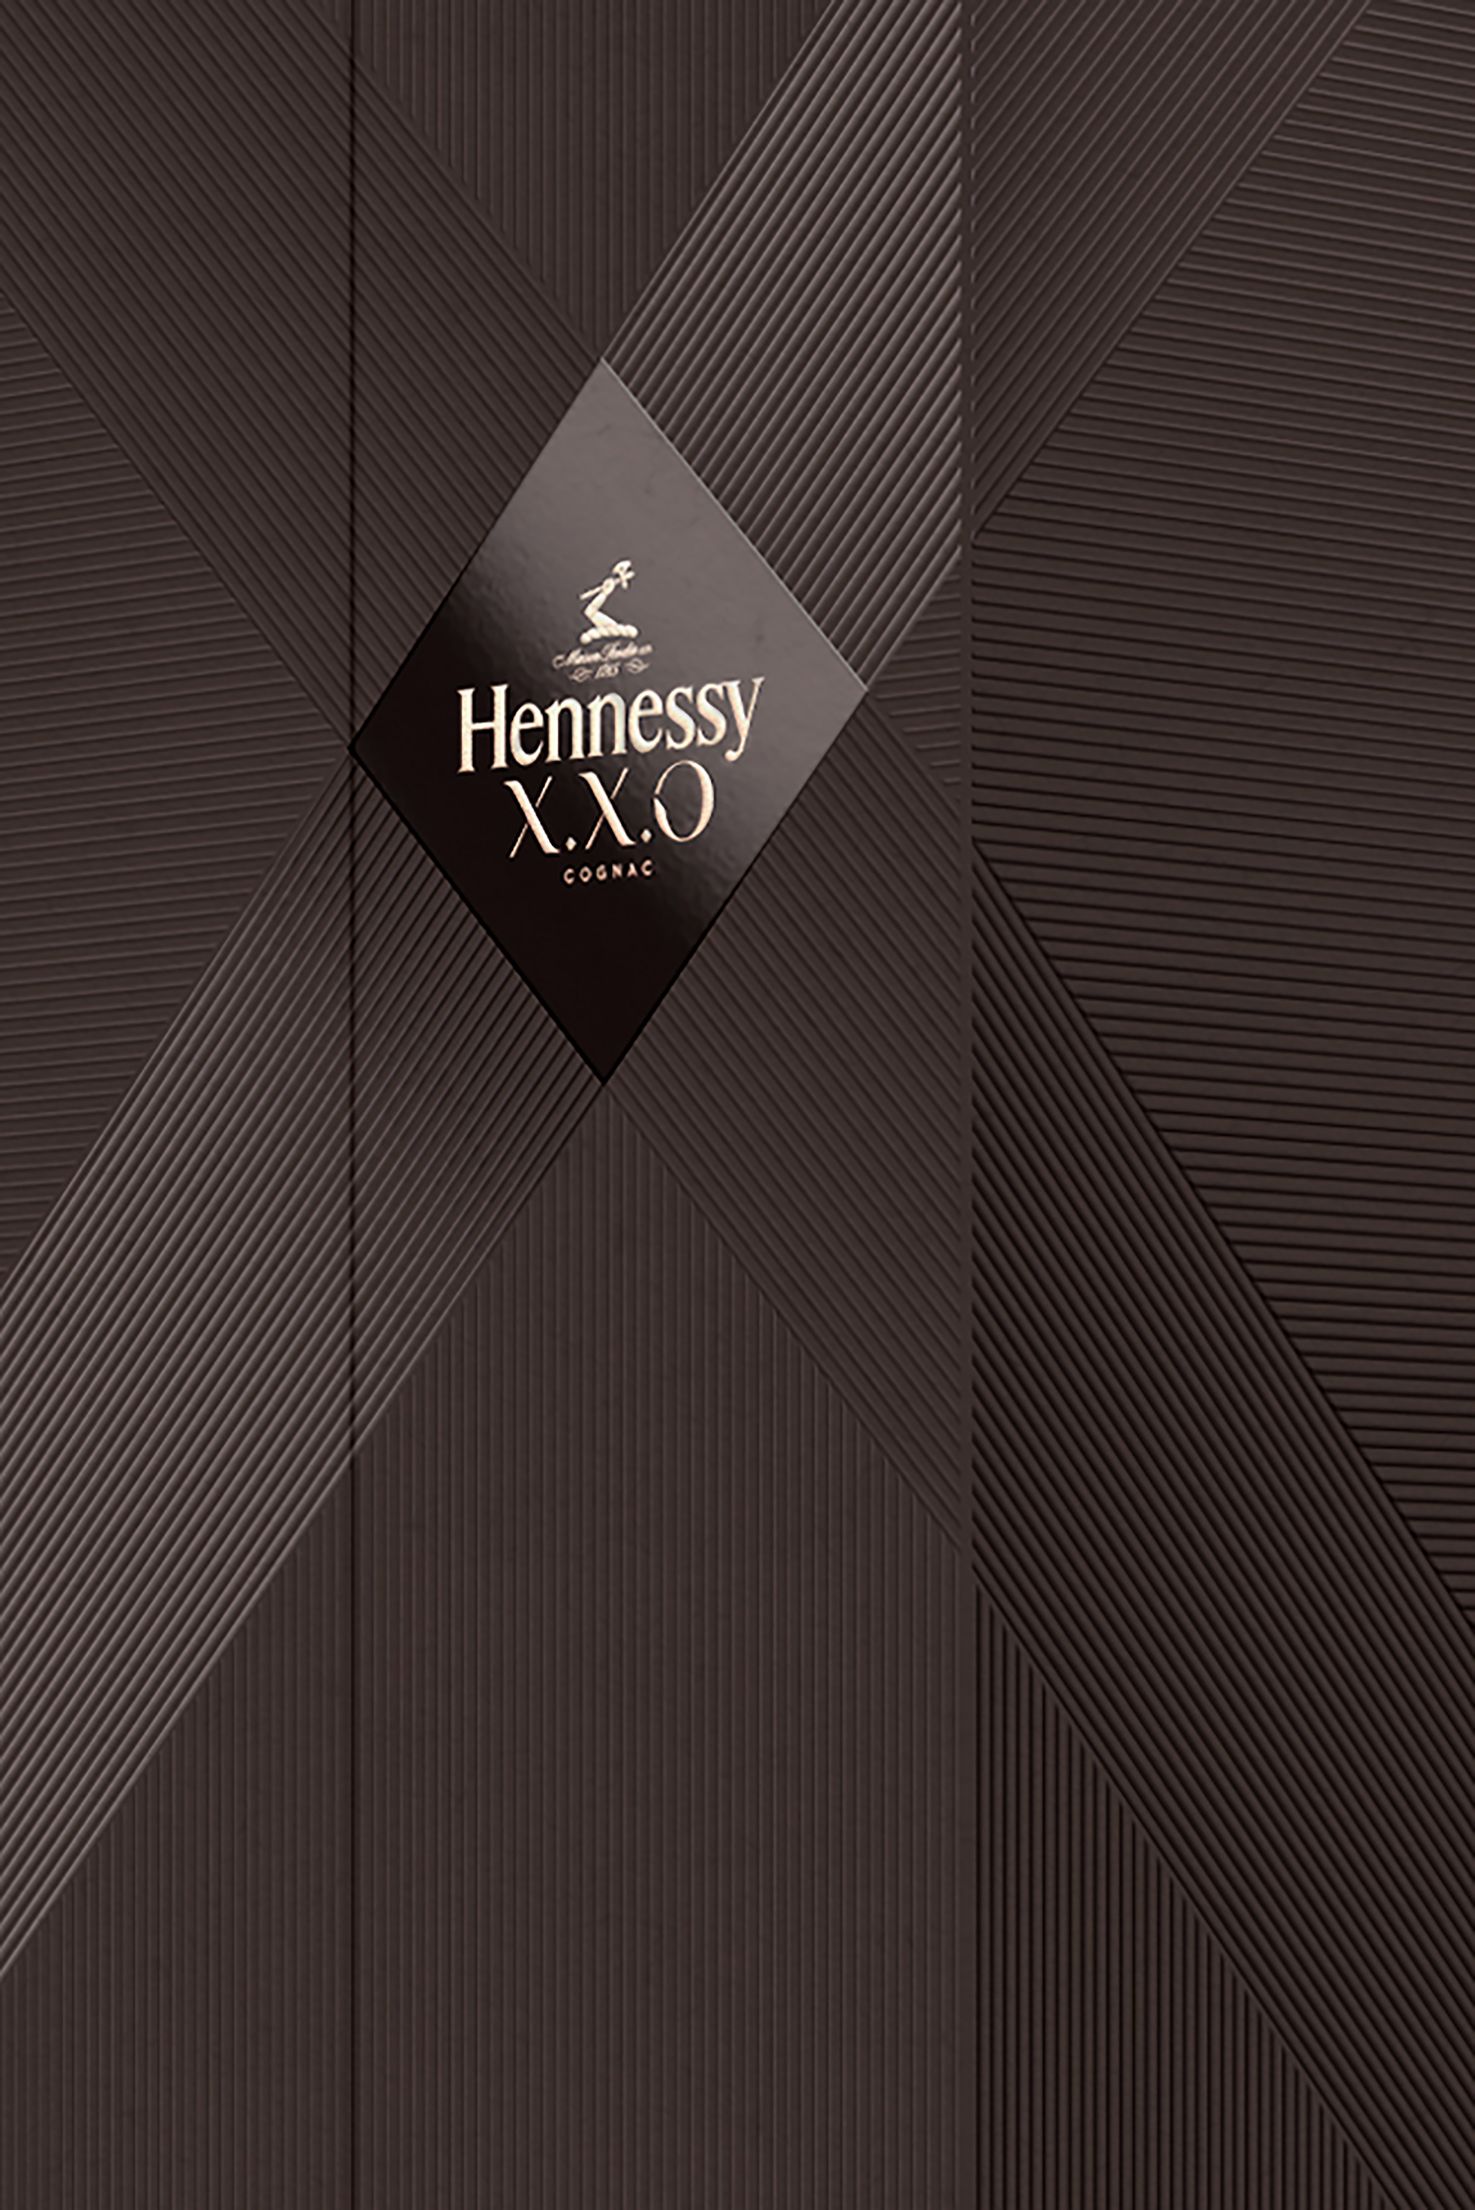 Hennessy XXO logo applied to box